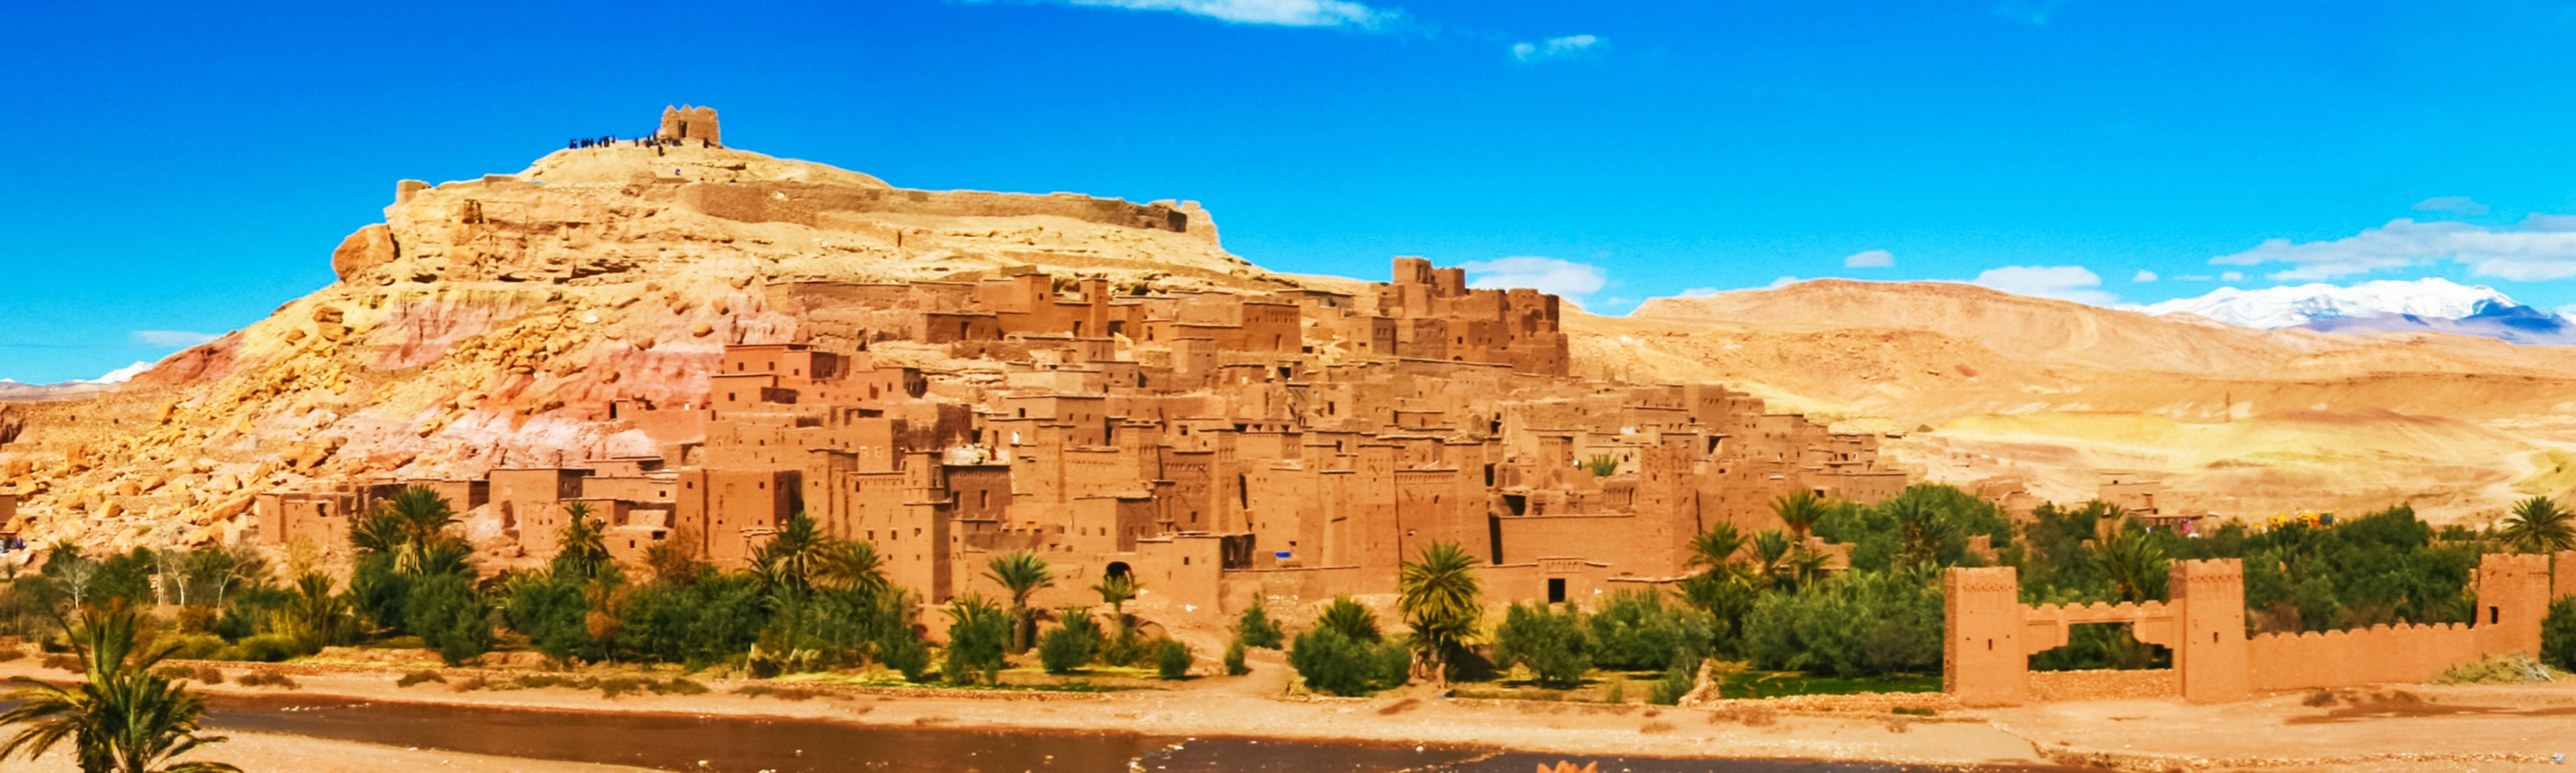 Pustynne miasto w Maroku